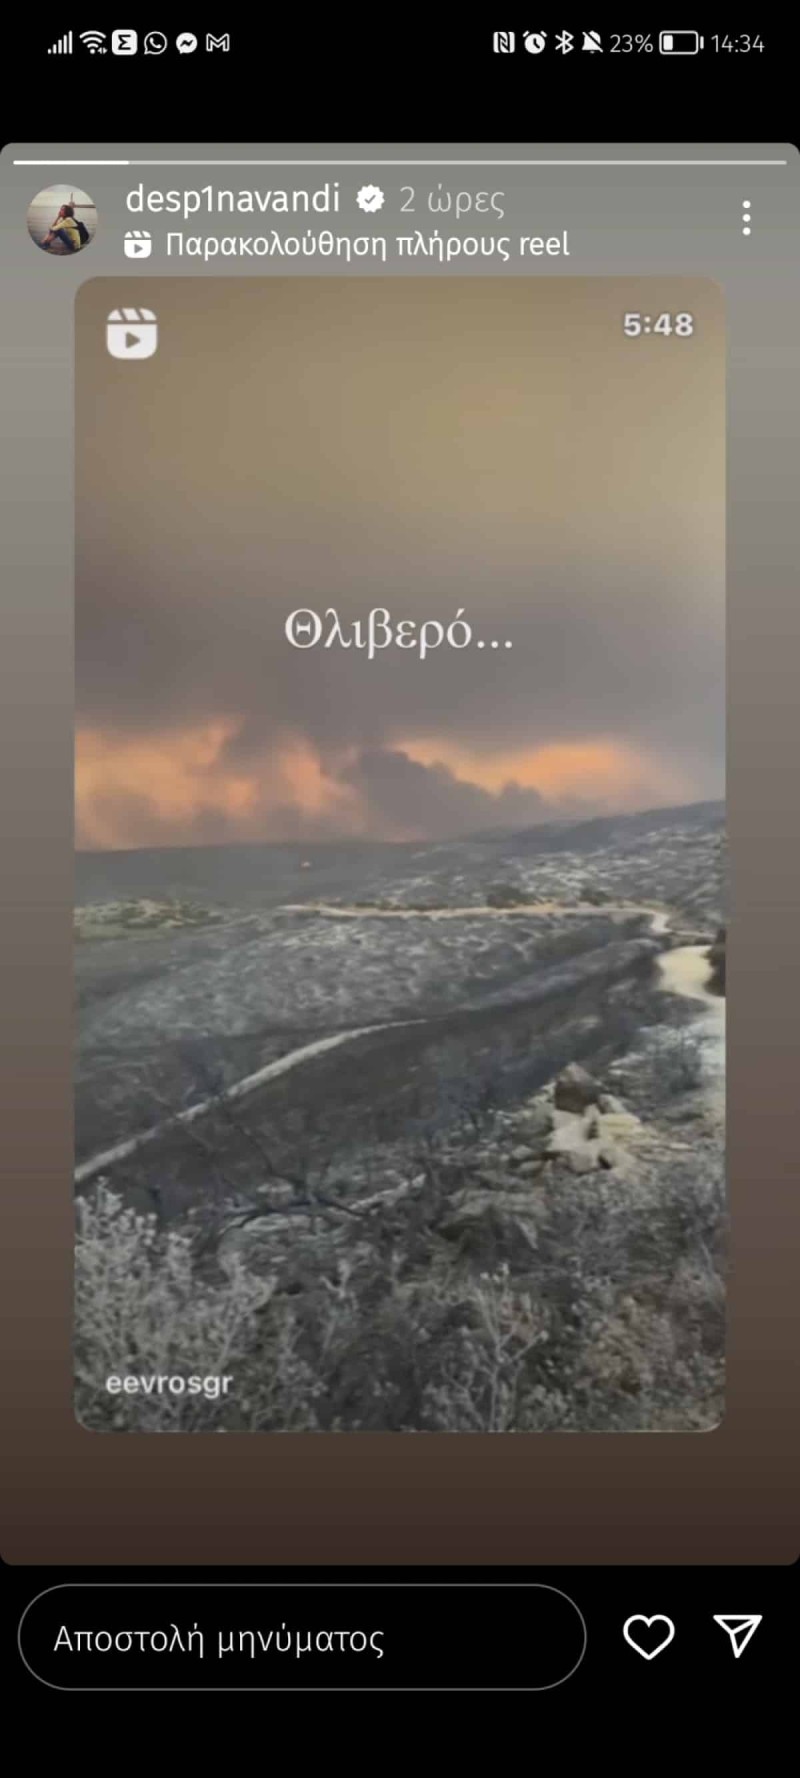 Δραματικό ξέσπασμα από την Δέσποινα Βανδή για τις πυρκαγιες